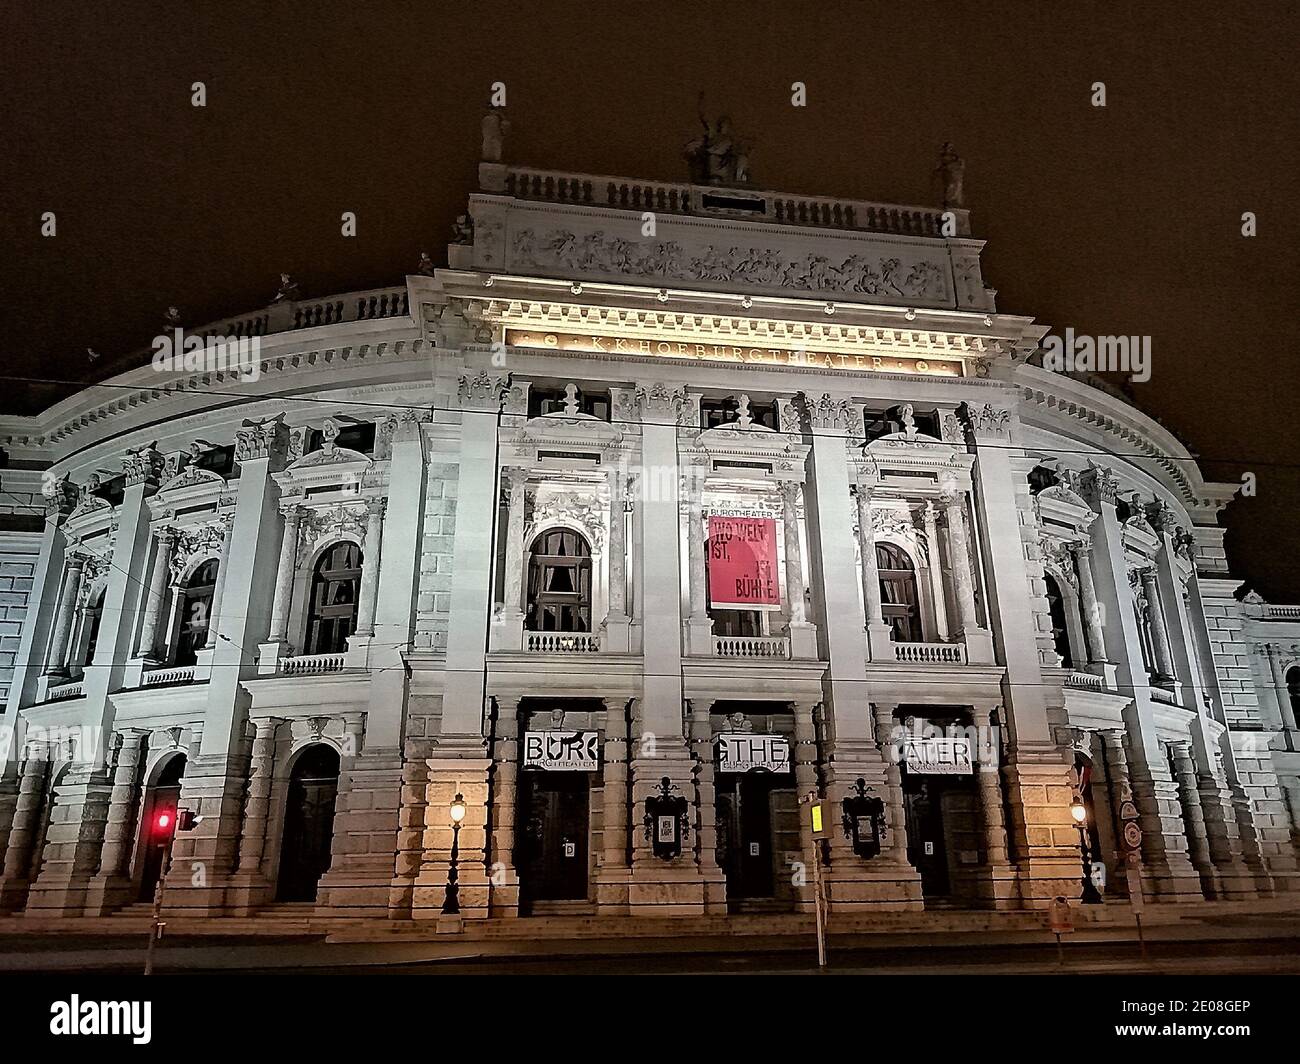 Vue de nuit sur le théâtre Hofburg. Vienne, Autriche. 06 décembre 2020. Banque D'Images